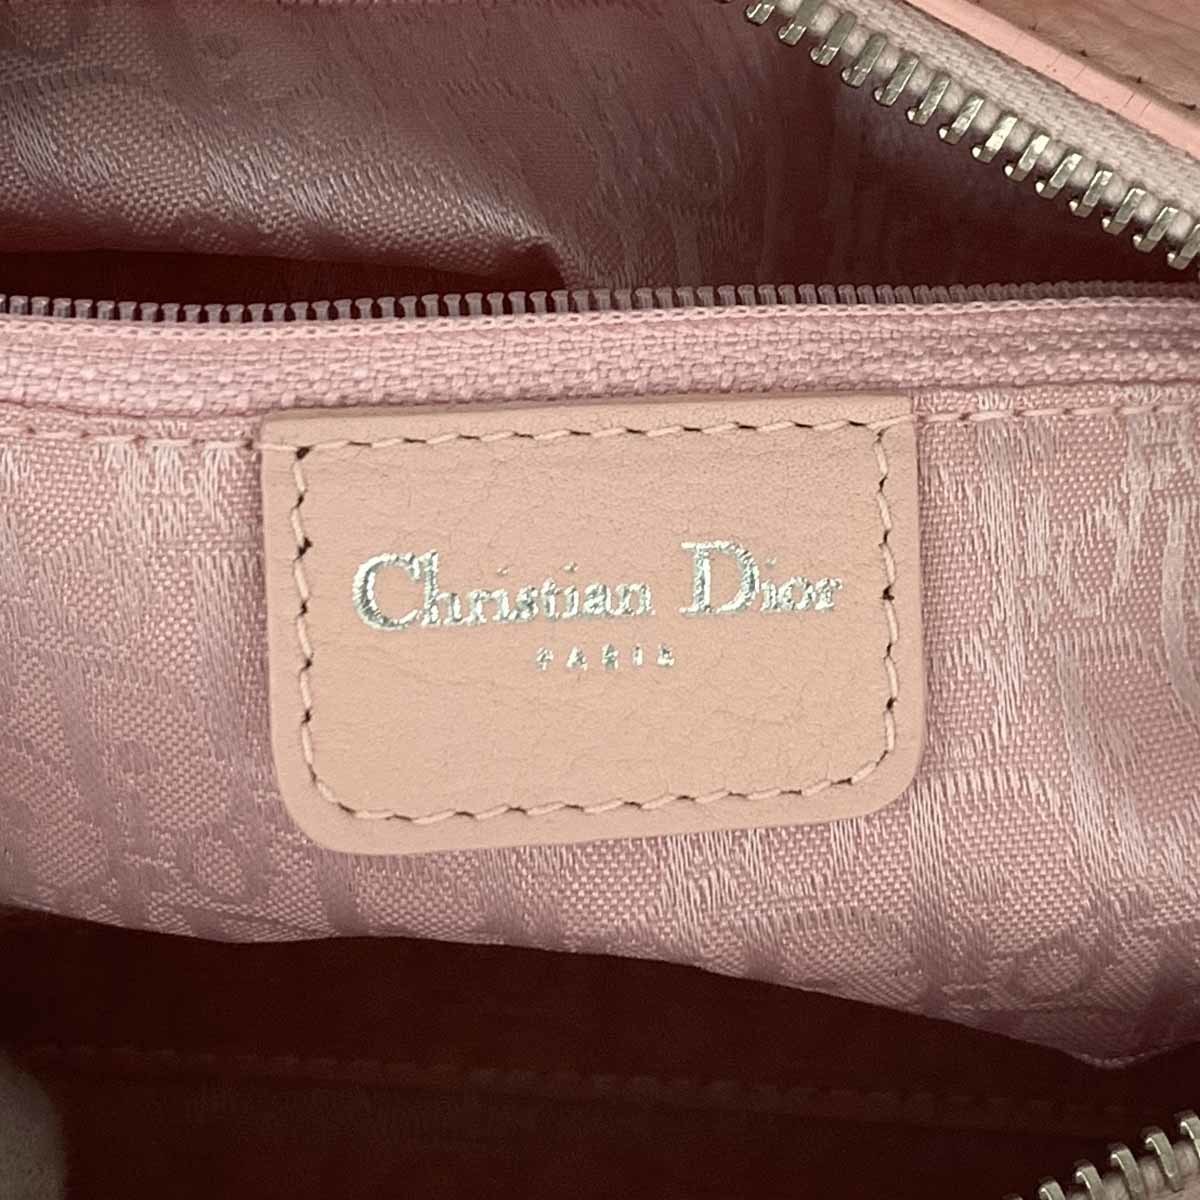 美品 Christian Dior クリスチャンディオール レディディオール カナージュ ハンドバッグ ピンク レザー レディース bag 鞄